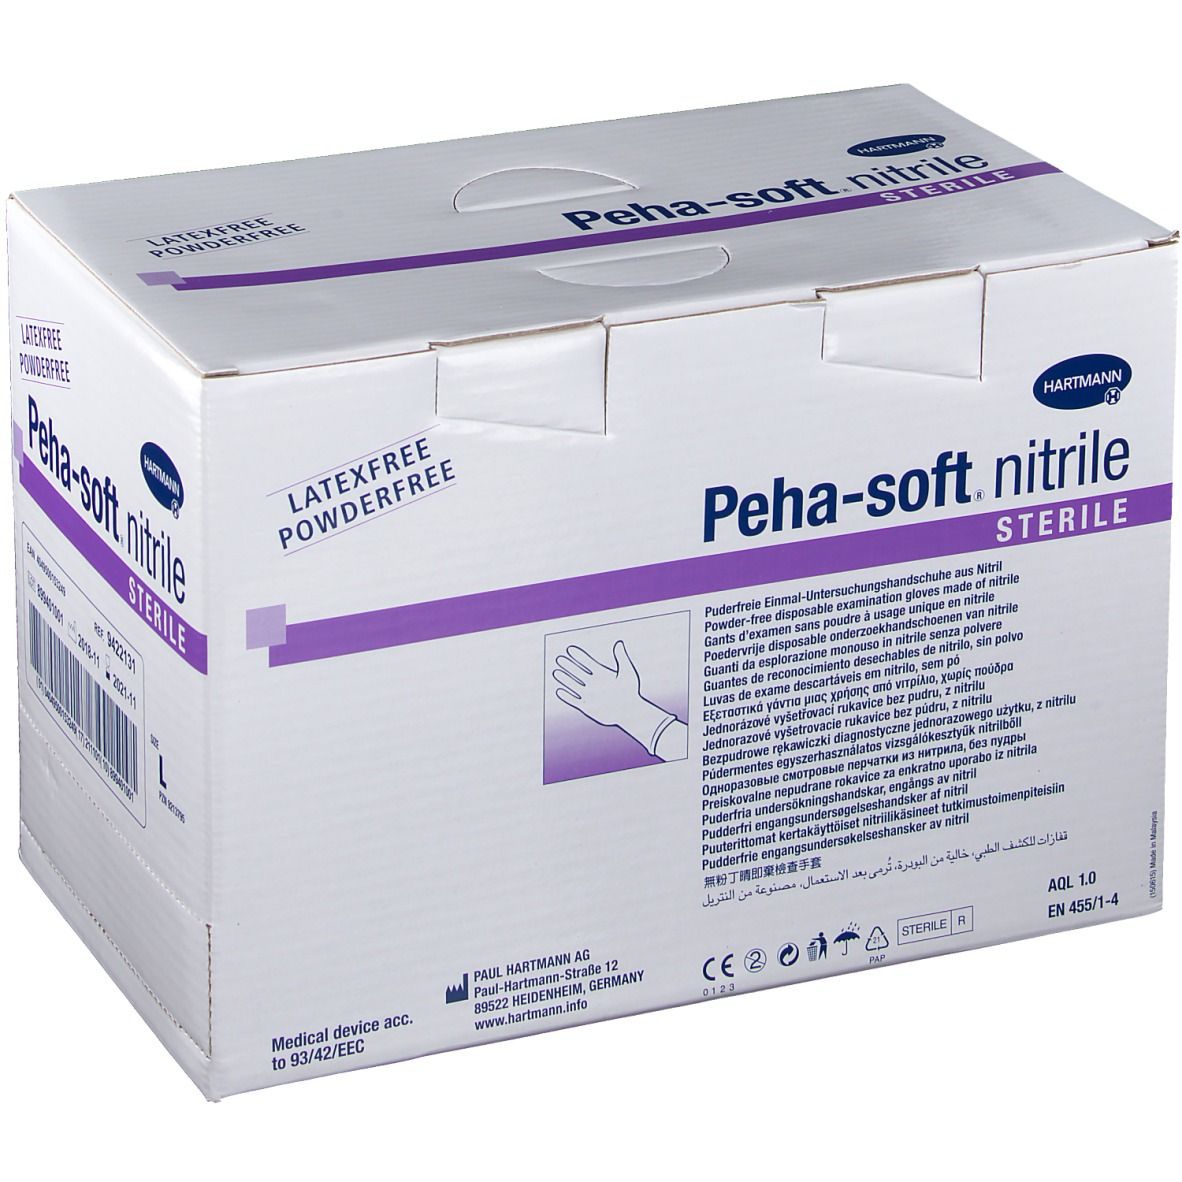 Peha-soft® nitrile puderfrei steril Untersuchungshandschuhe Gr. L 8 - 9